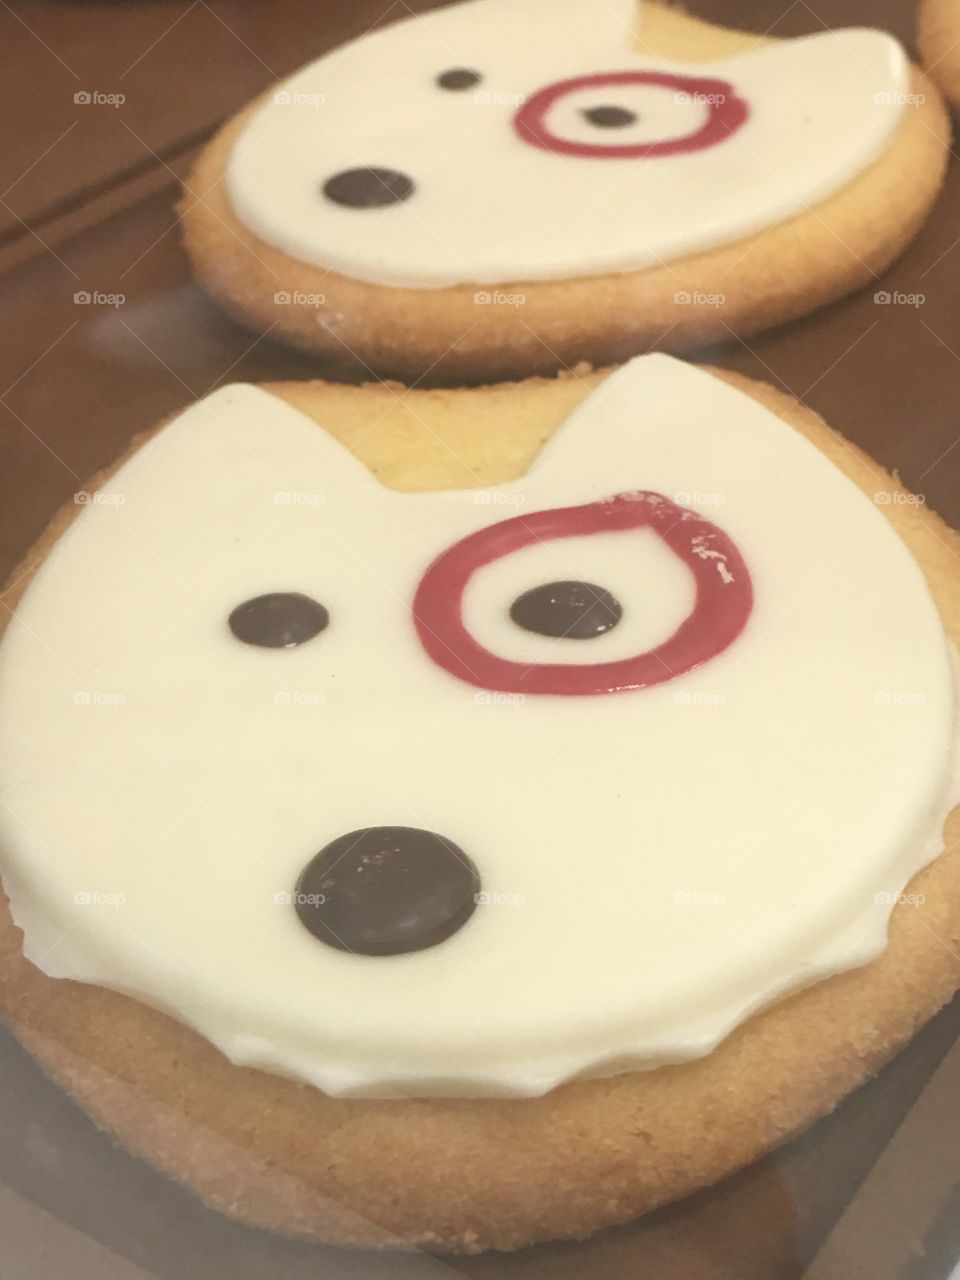 Target cookie